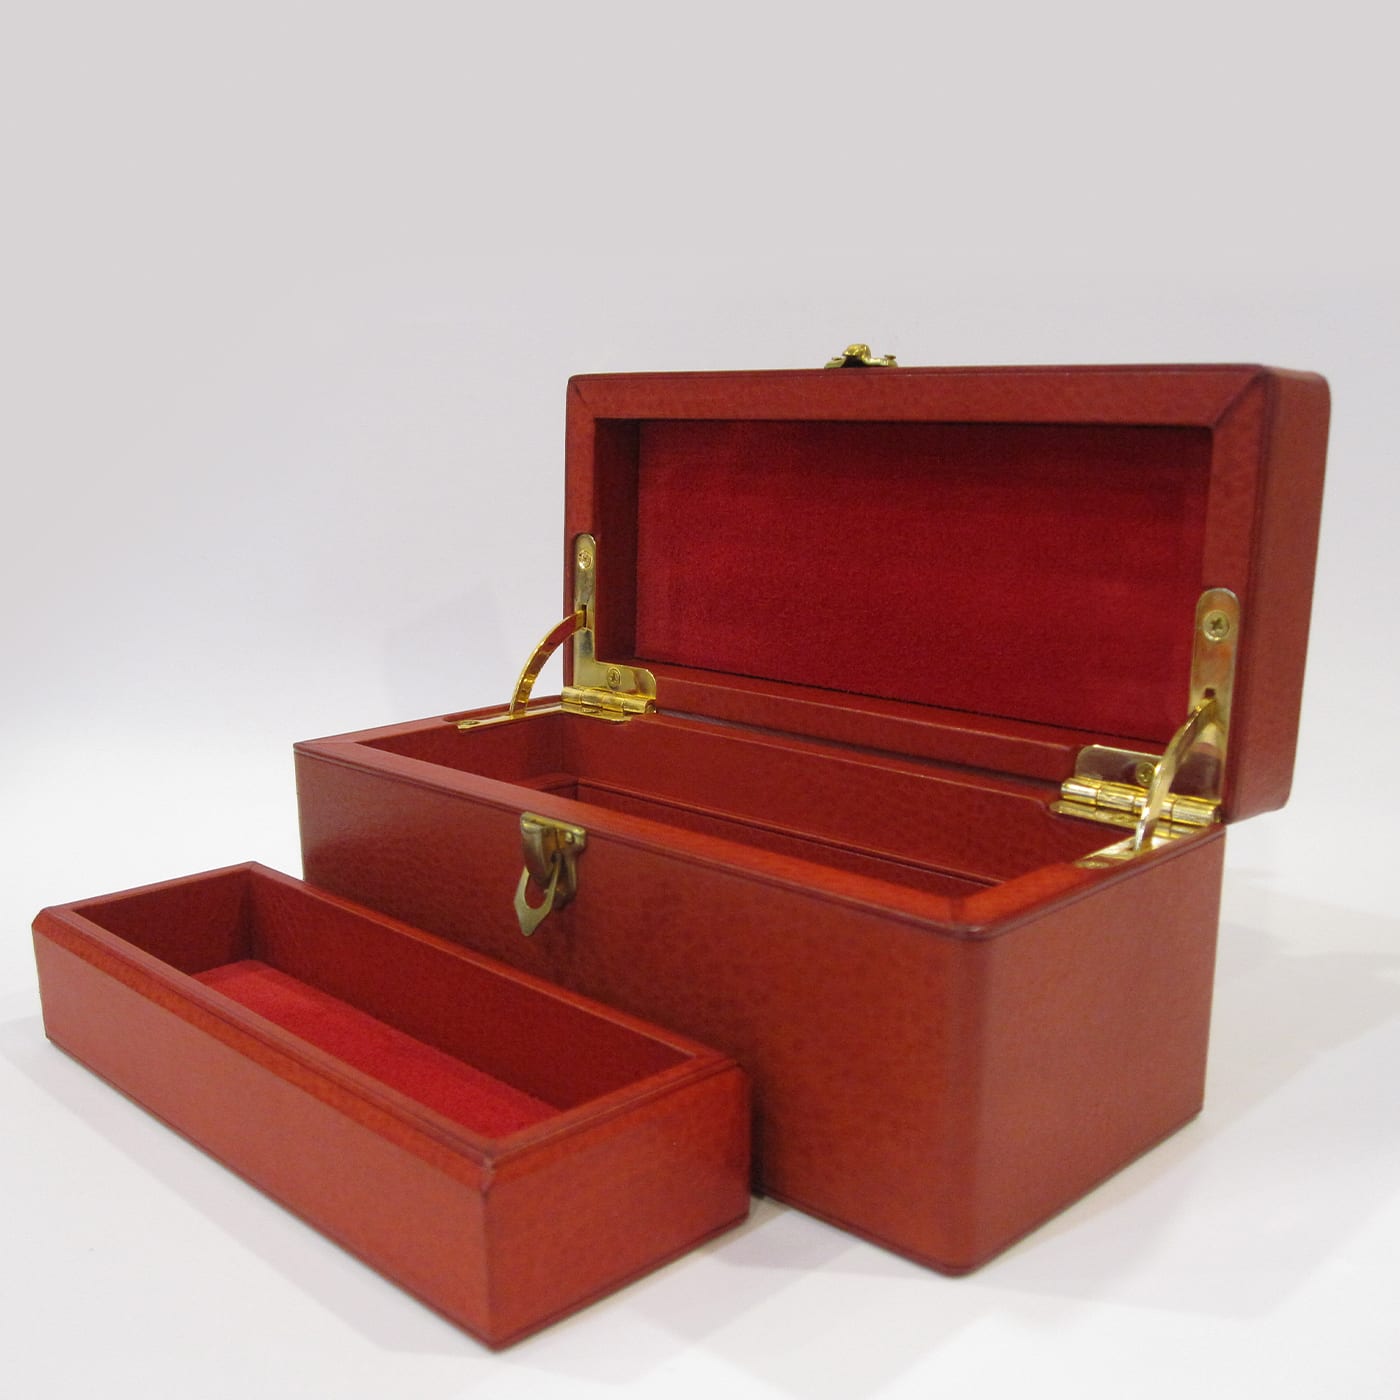 Leather Jewelry Box with Brass Fish - AtelierGK Firenze